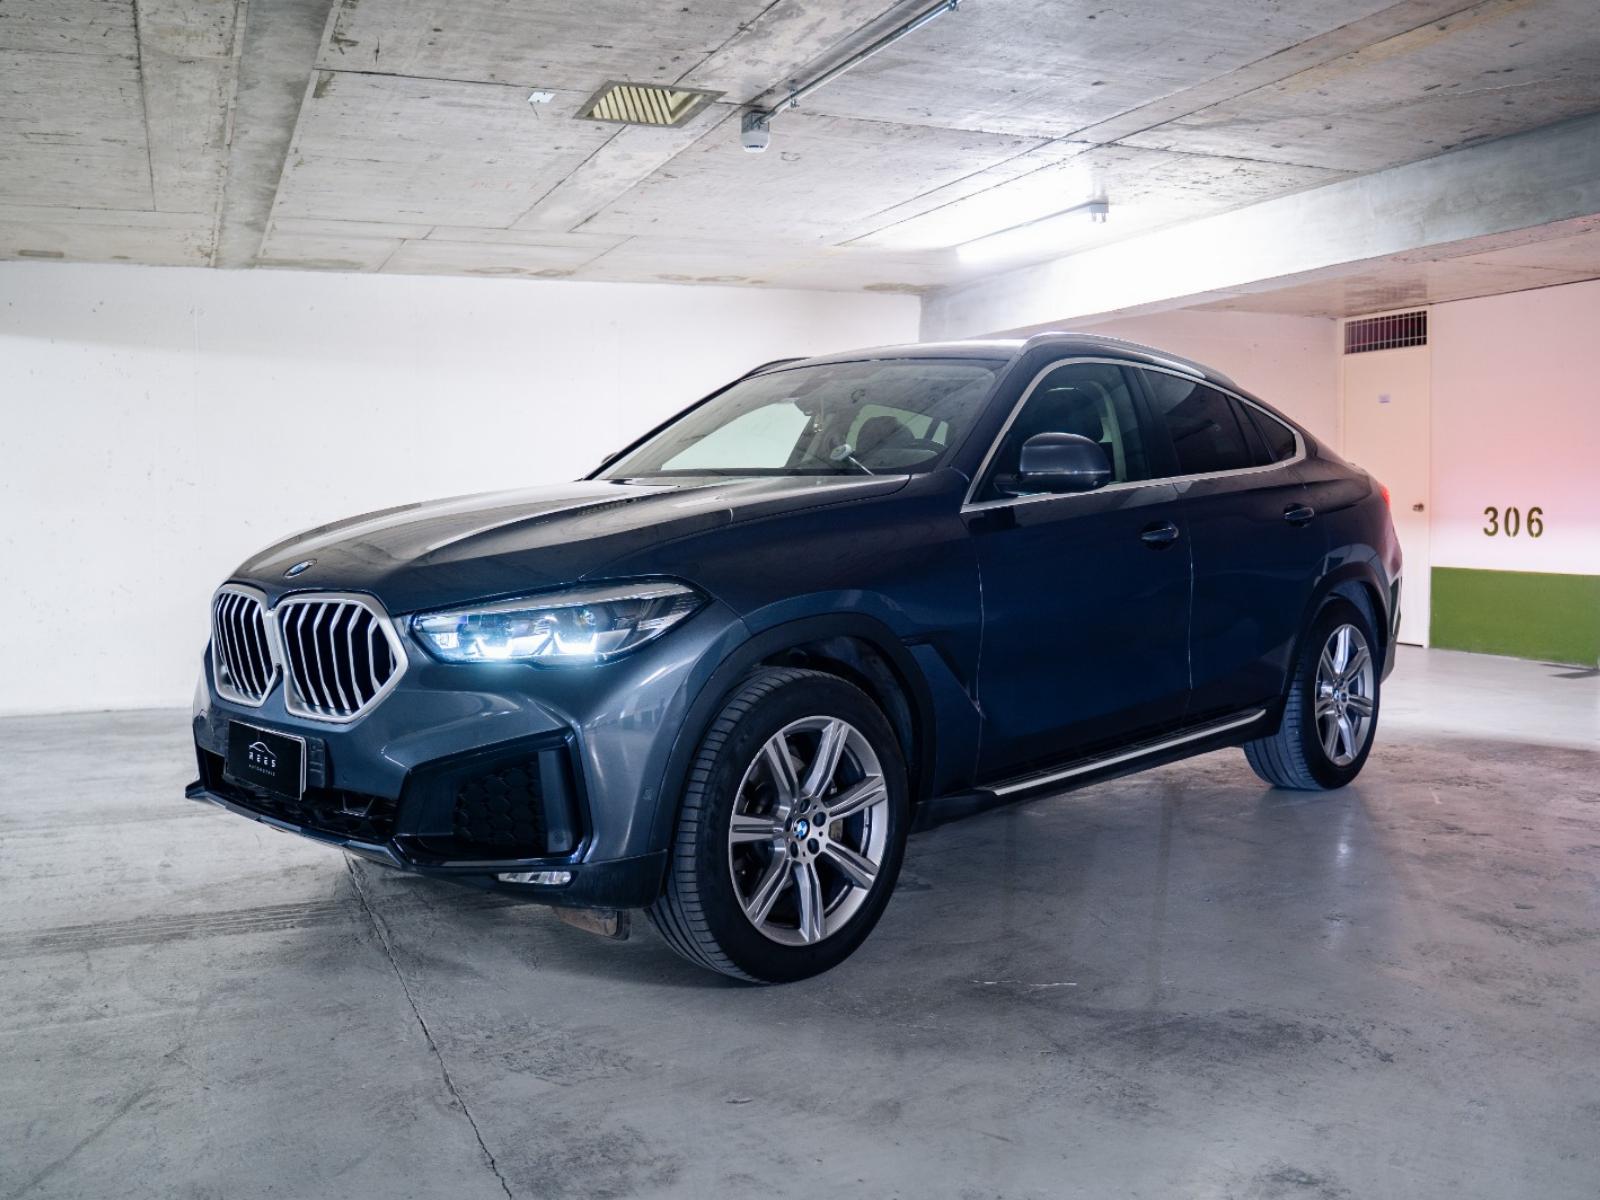 BMW X6 Xdrive 40i 2021 3.0 LTS - 333 HP - 